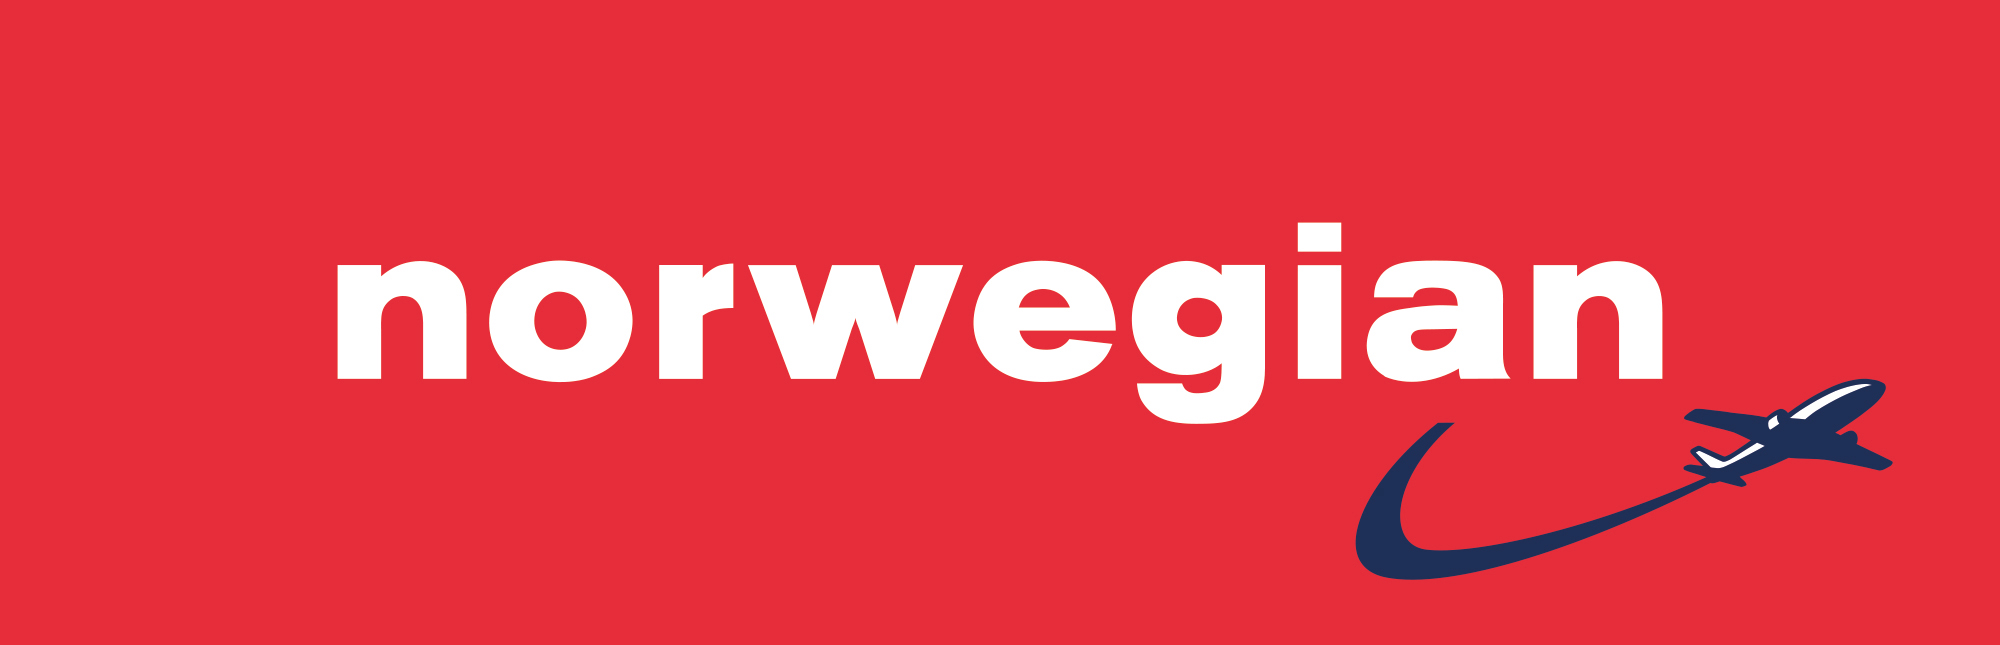 Aanbiedingen Norwegian logo